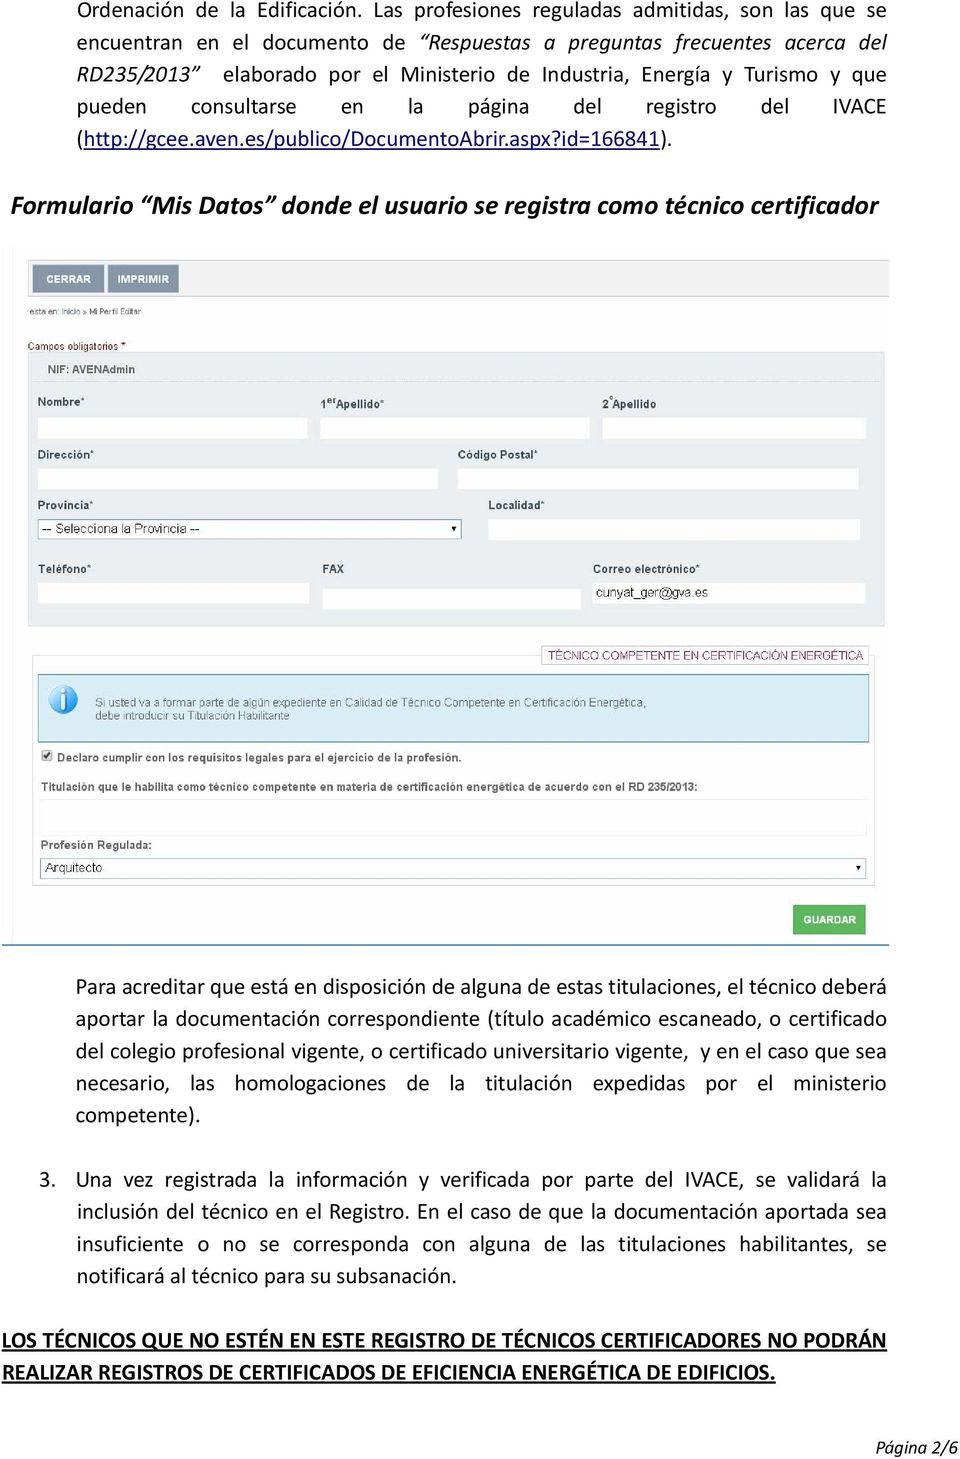 que pueden consultarse en la página del registro del IVACE (http://gcee.aven.es/publico/documentoabrir.aspx?id=166841).